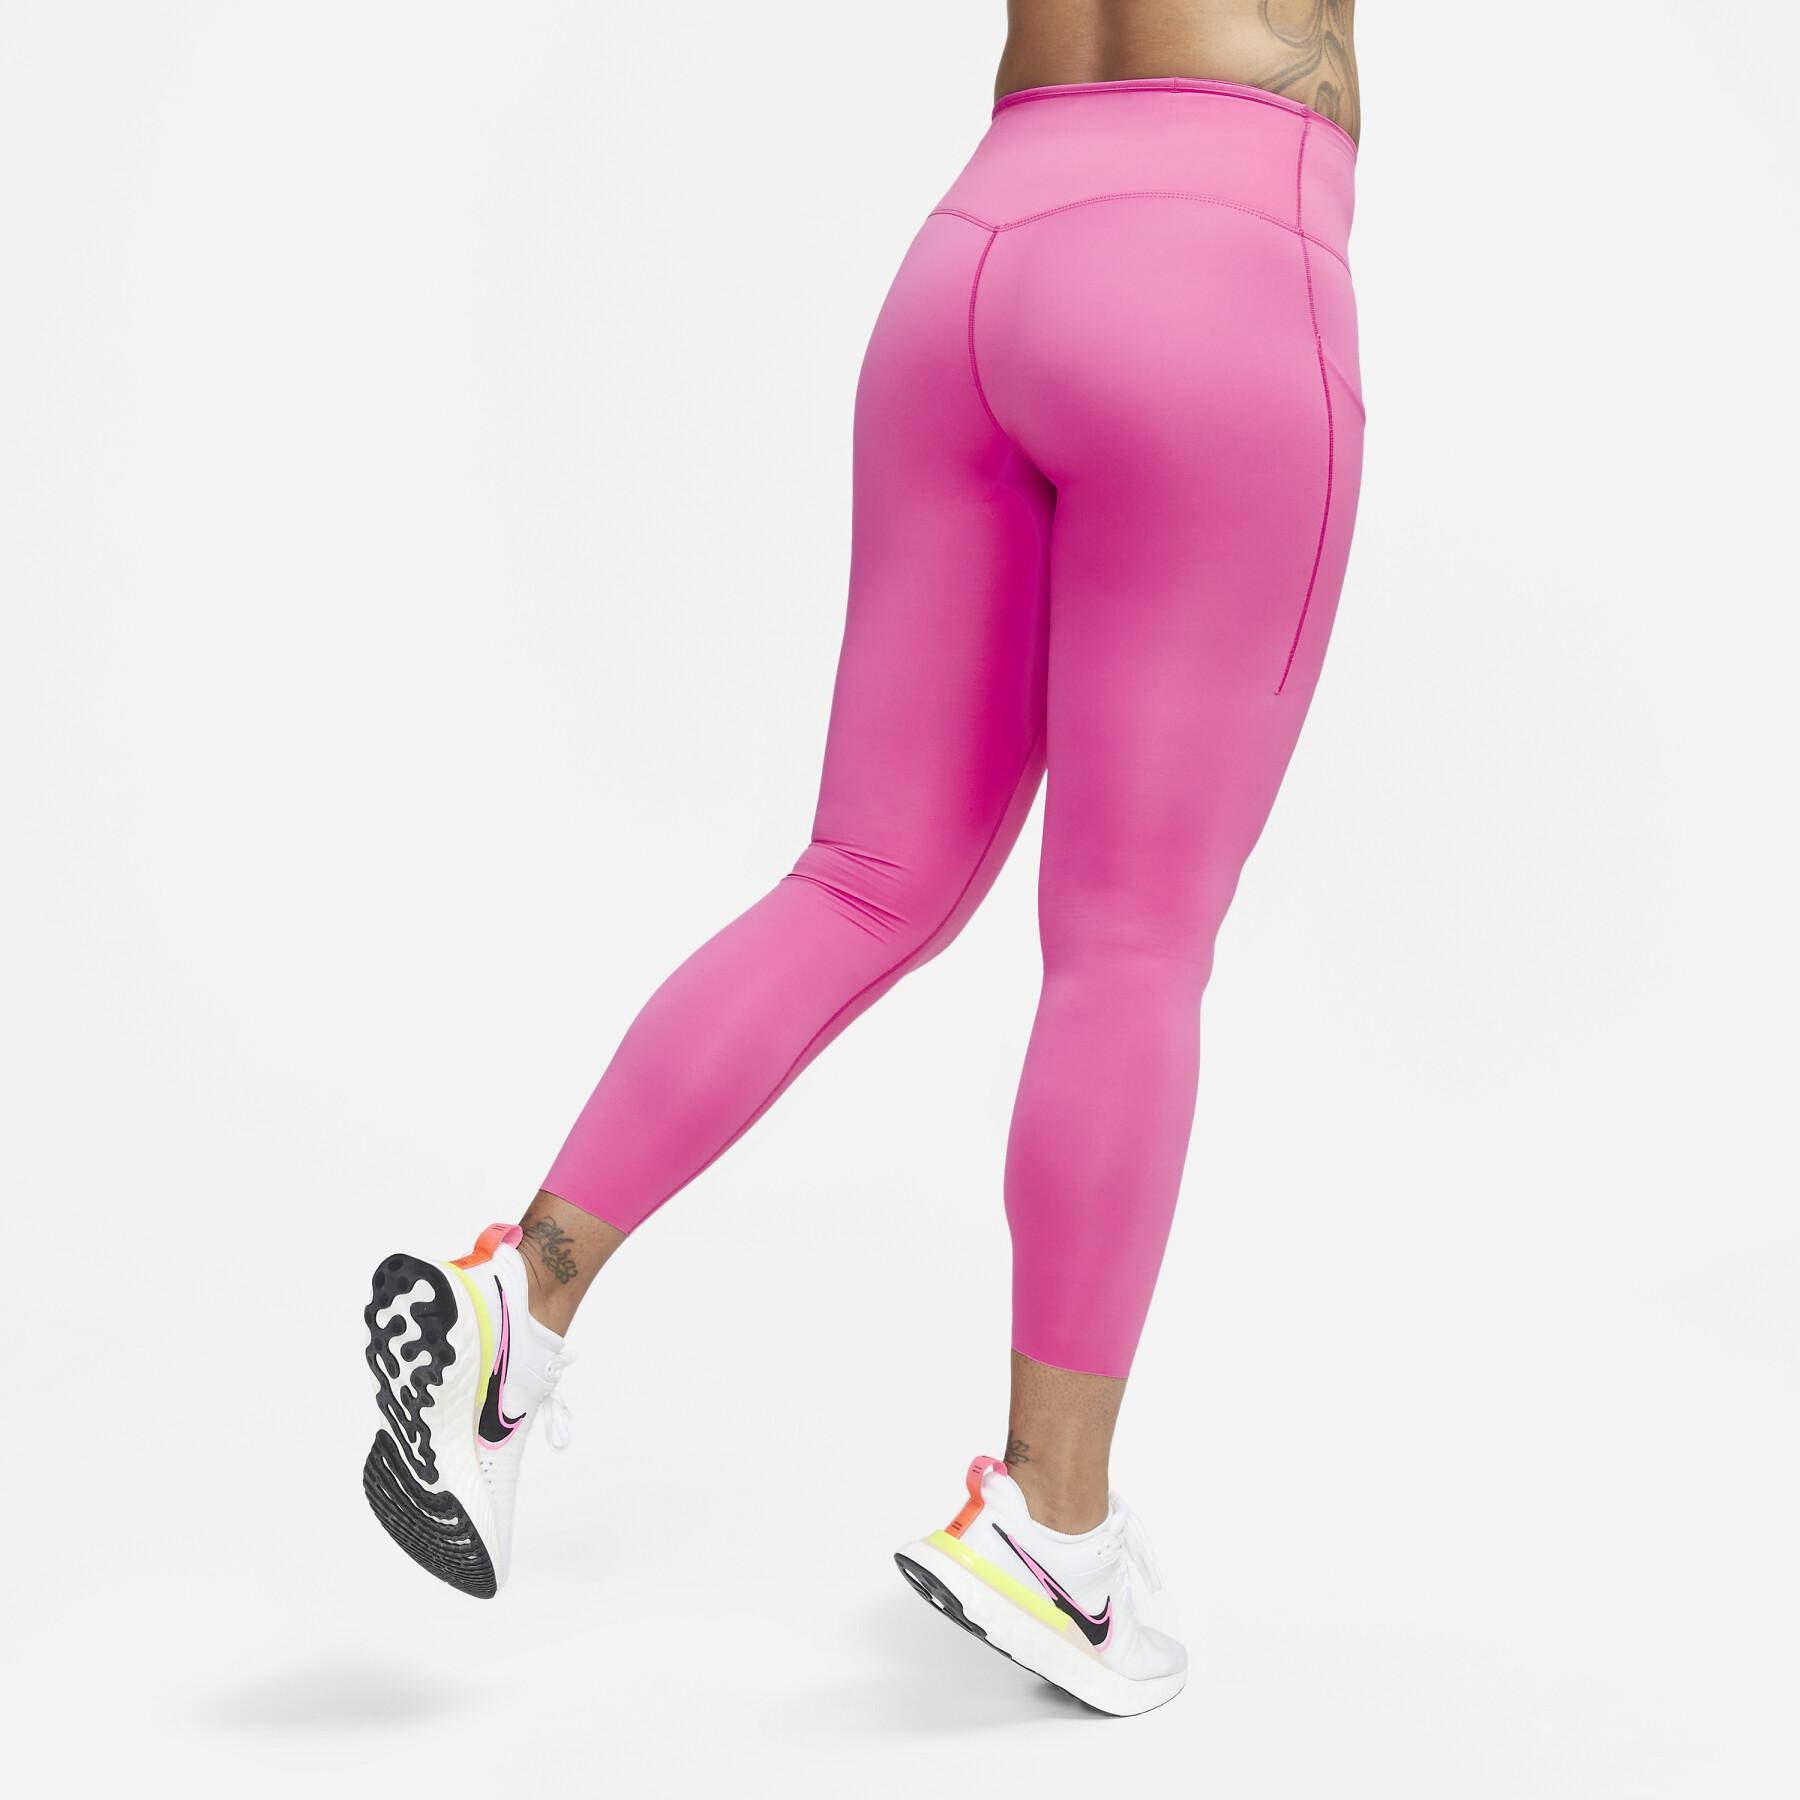 Legging 7/8 femme Nike Dri-Fit Go MR